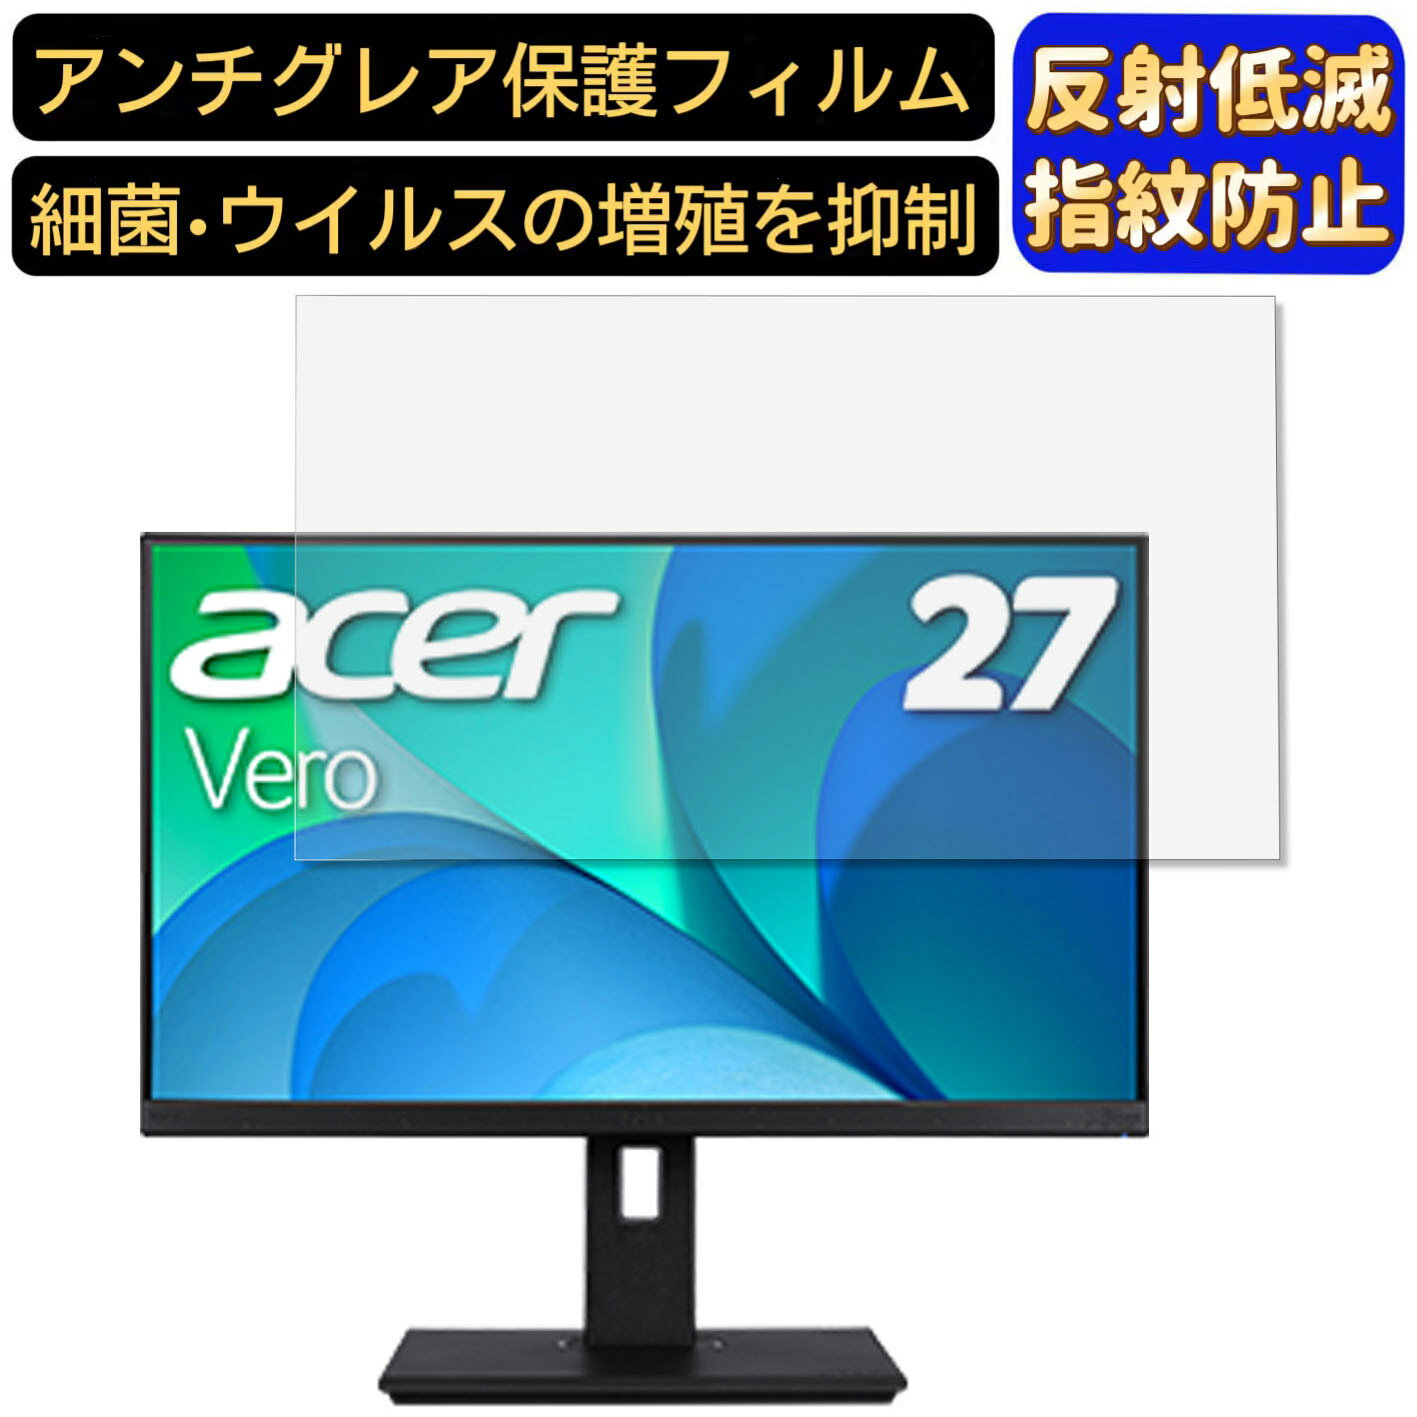 【ポイント2倍】Acer BR277bmiprx (BR7) 27